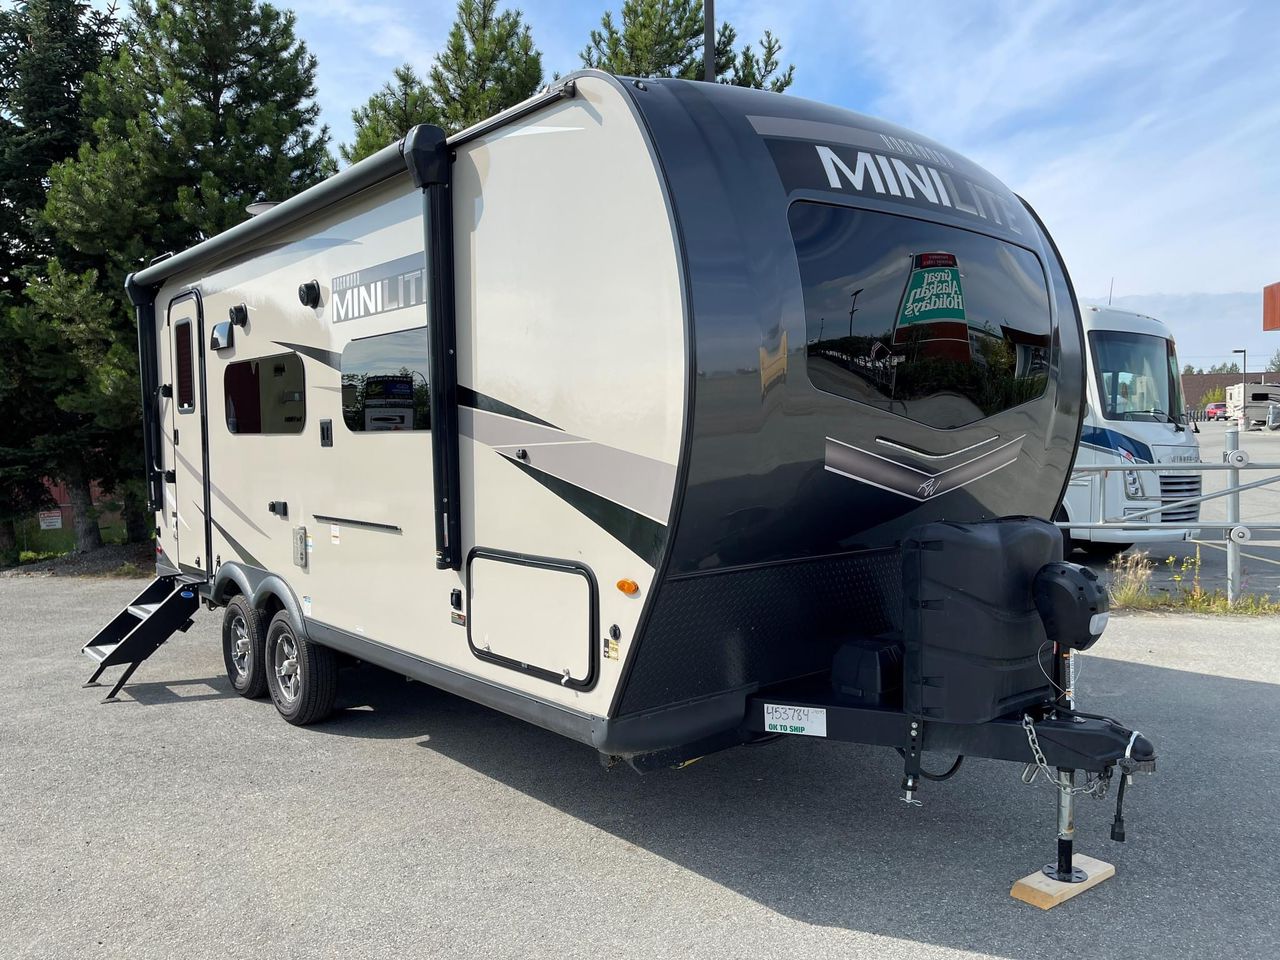 Mini lite camper trailer